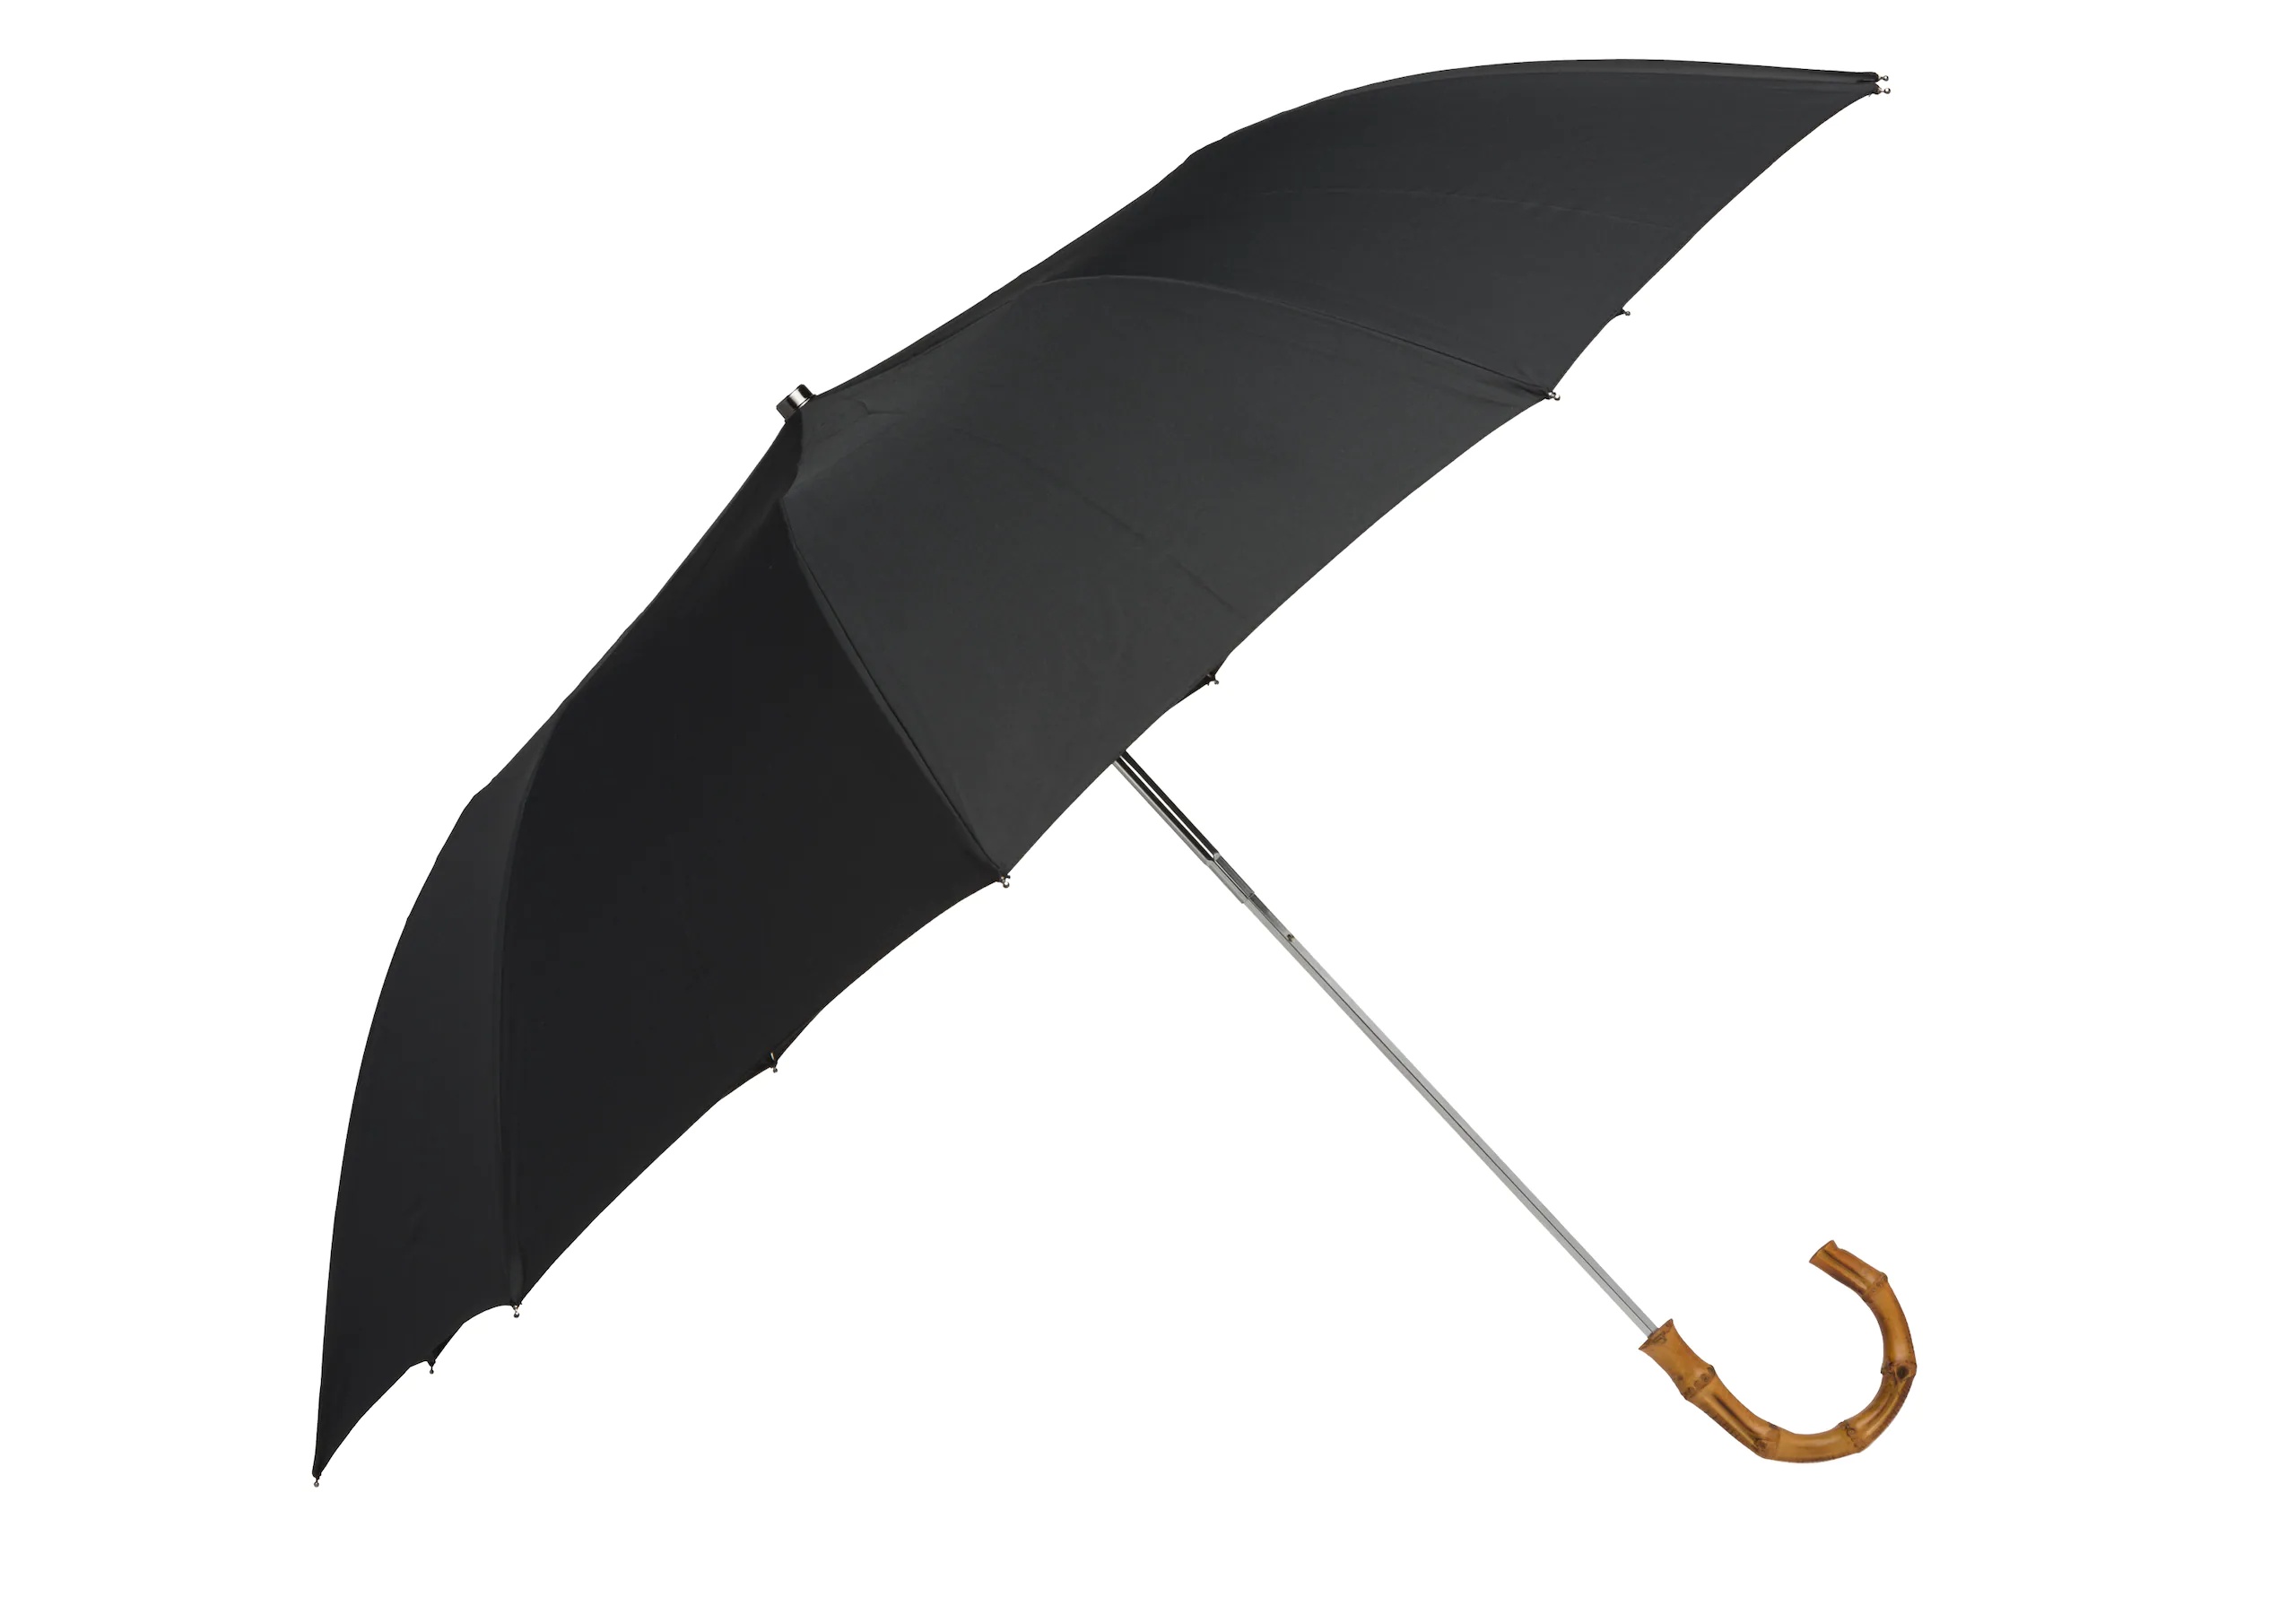 Telescopic umbrella
Whangee Handle Black - 2